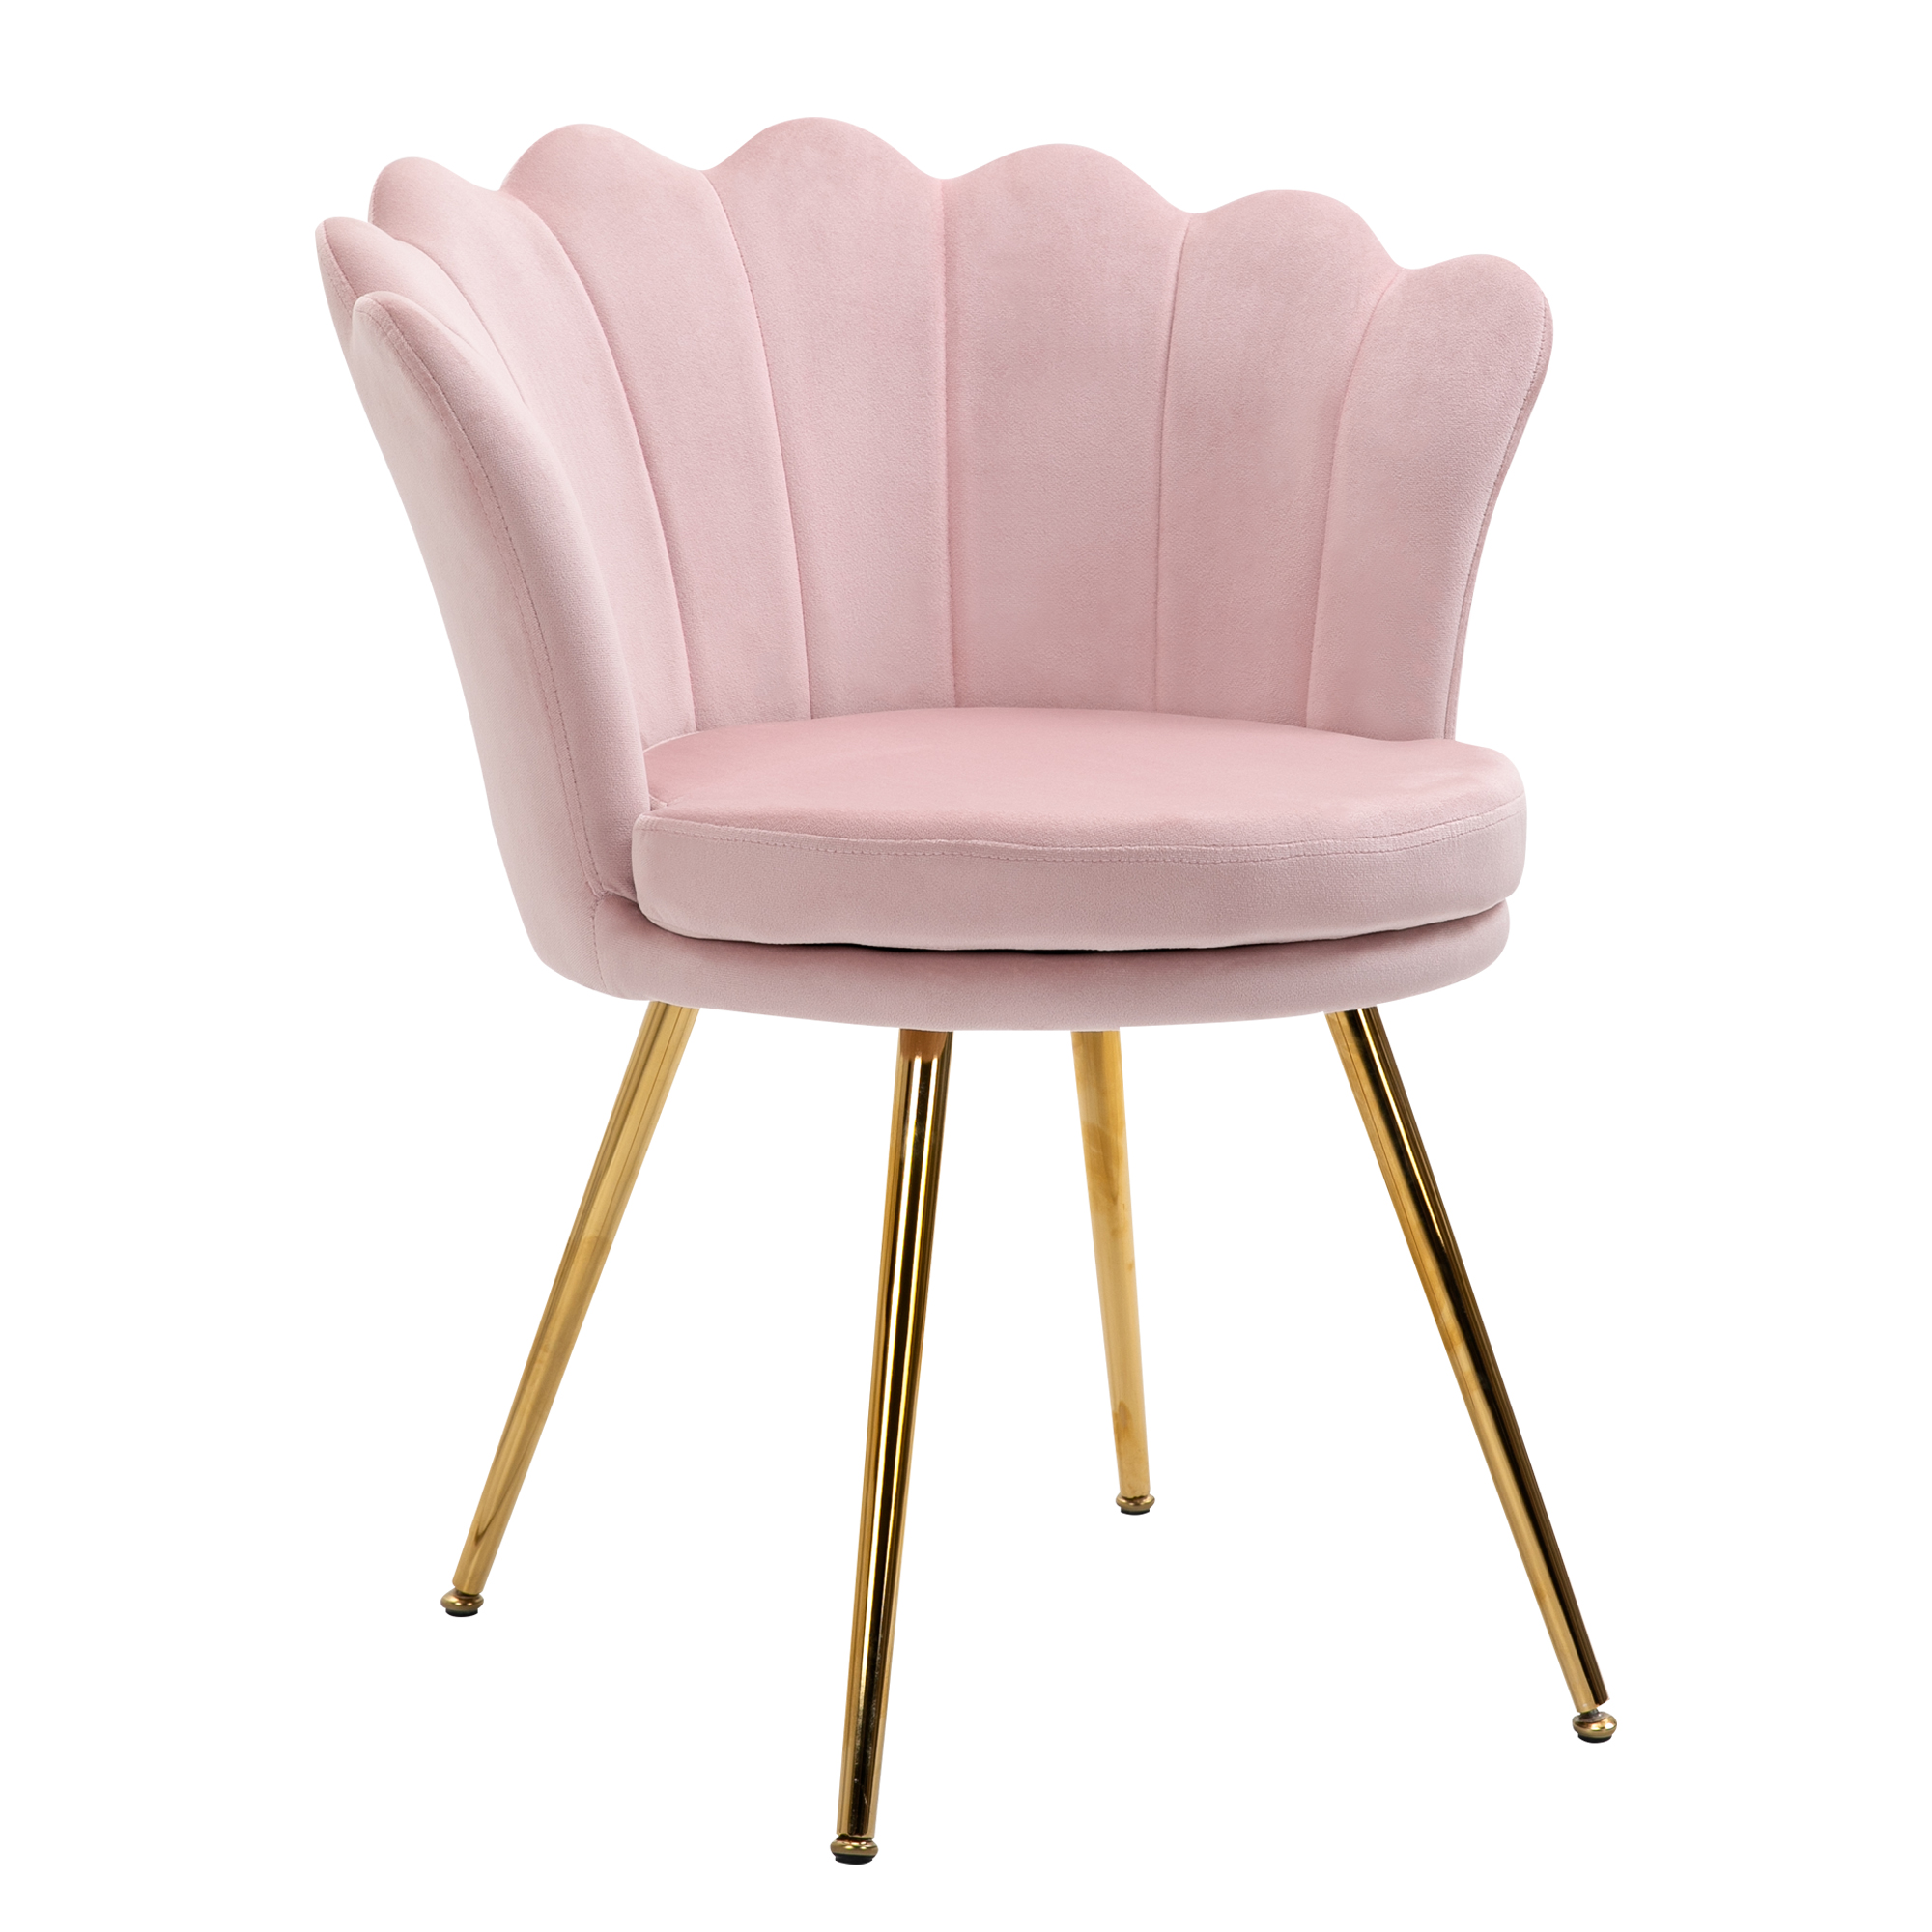 Chaise design coquillage pieds métal dorés effilés velours rose poudré